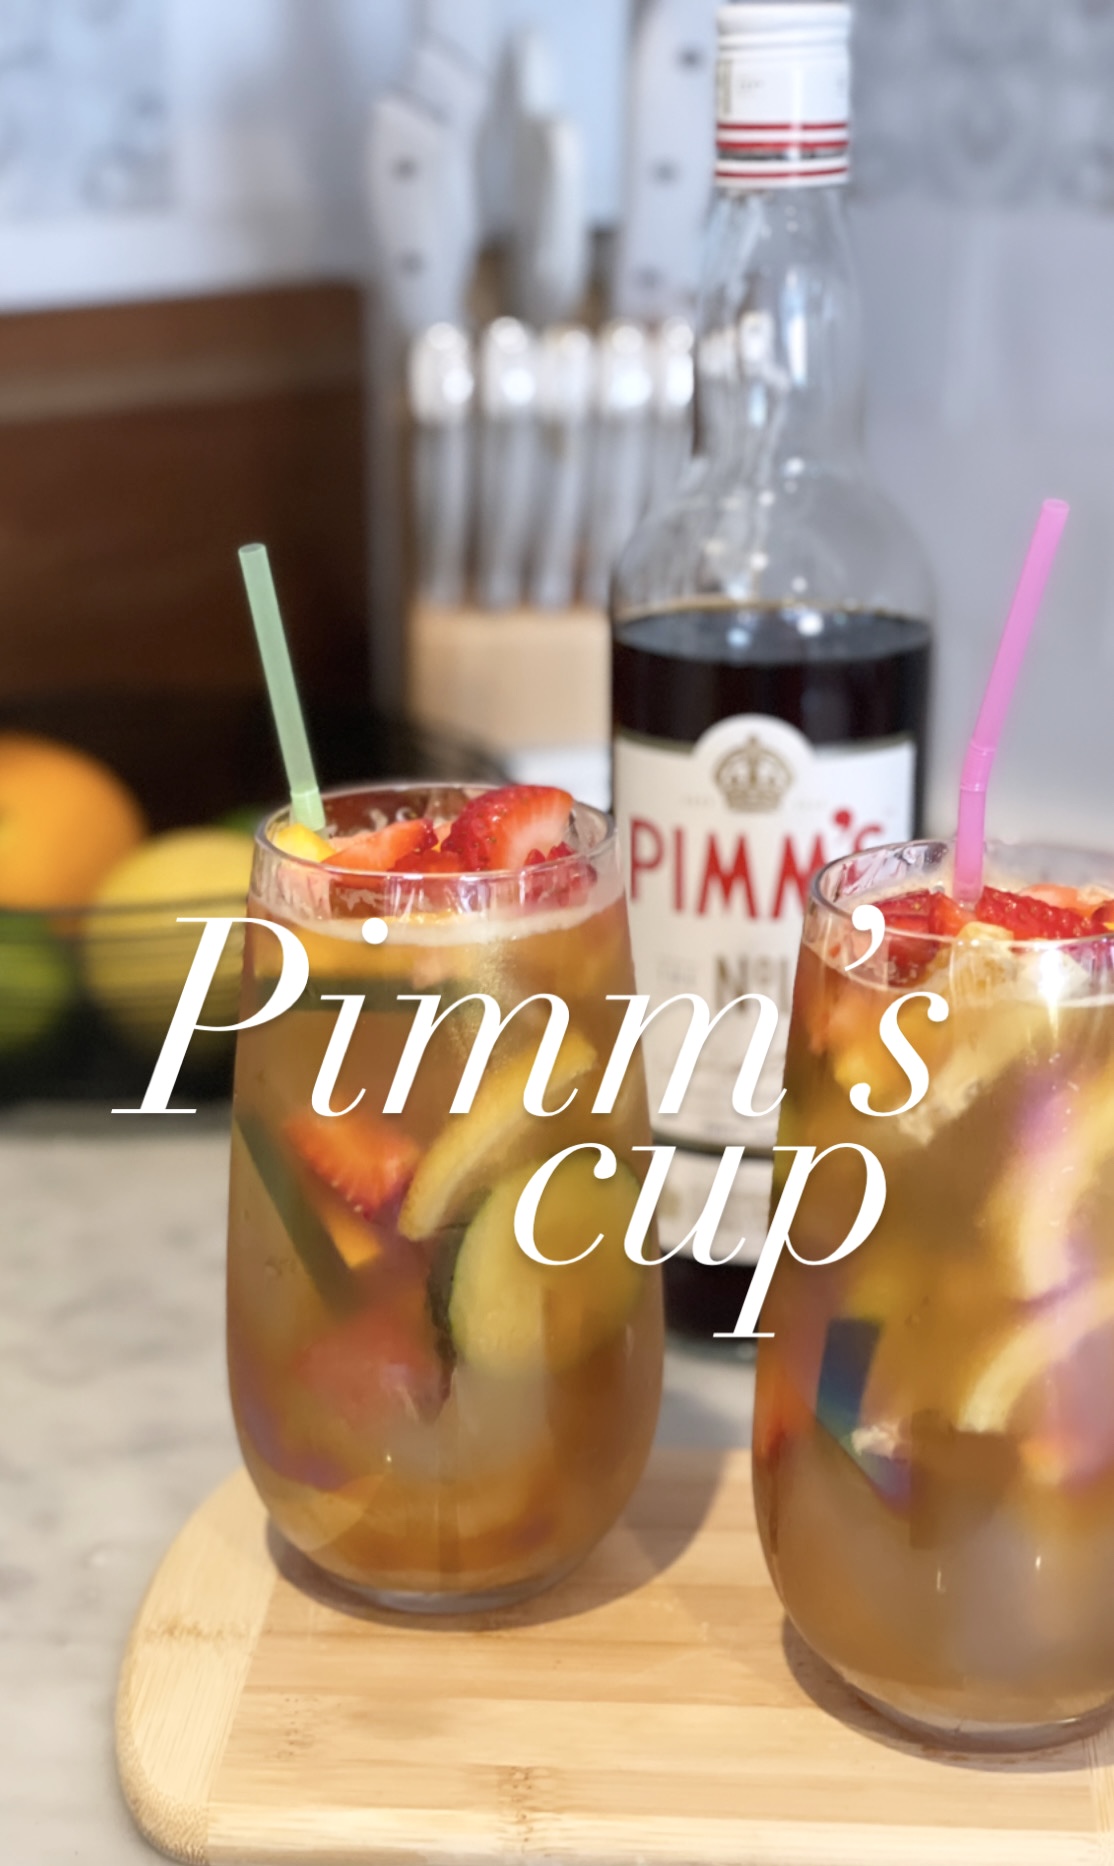 pimms cup, wimbeldon, tennis, cocktail recipe